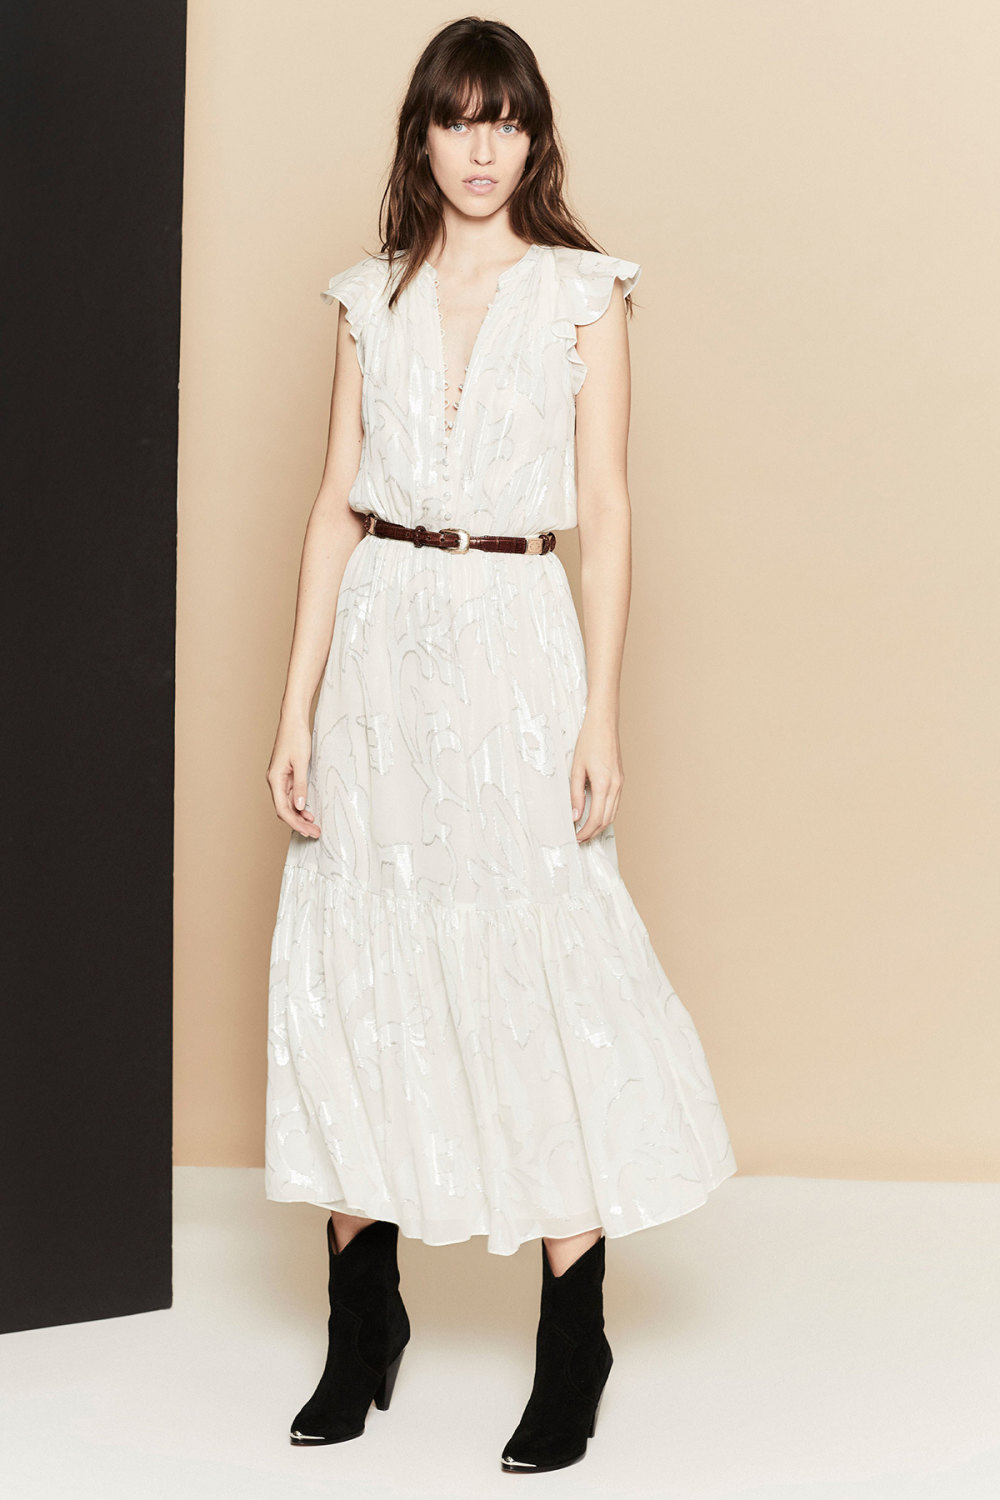 Joie时装系列漂亮的印花连衣裙和针织上衣进一步更新了外观-1.jpg